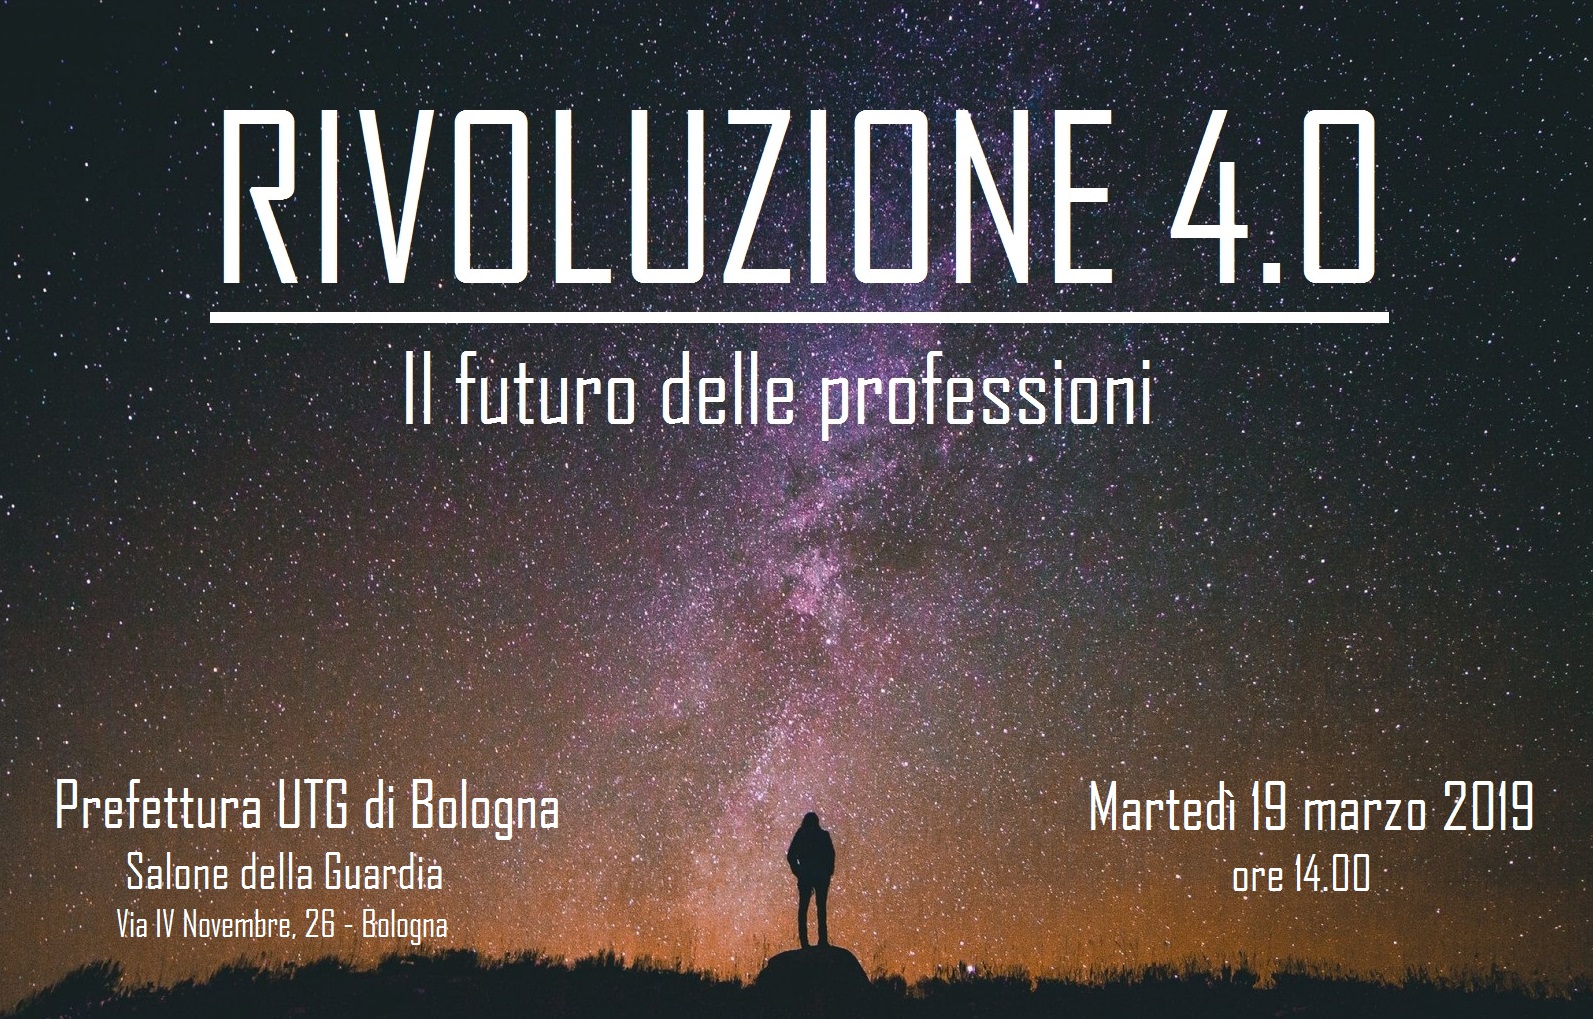 I° Meeting Lions Club Bologna: Rivoluzione 4.0 il futuro delle professioni